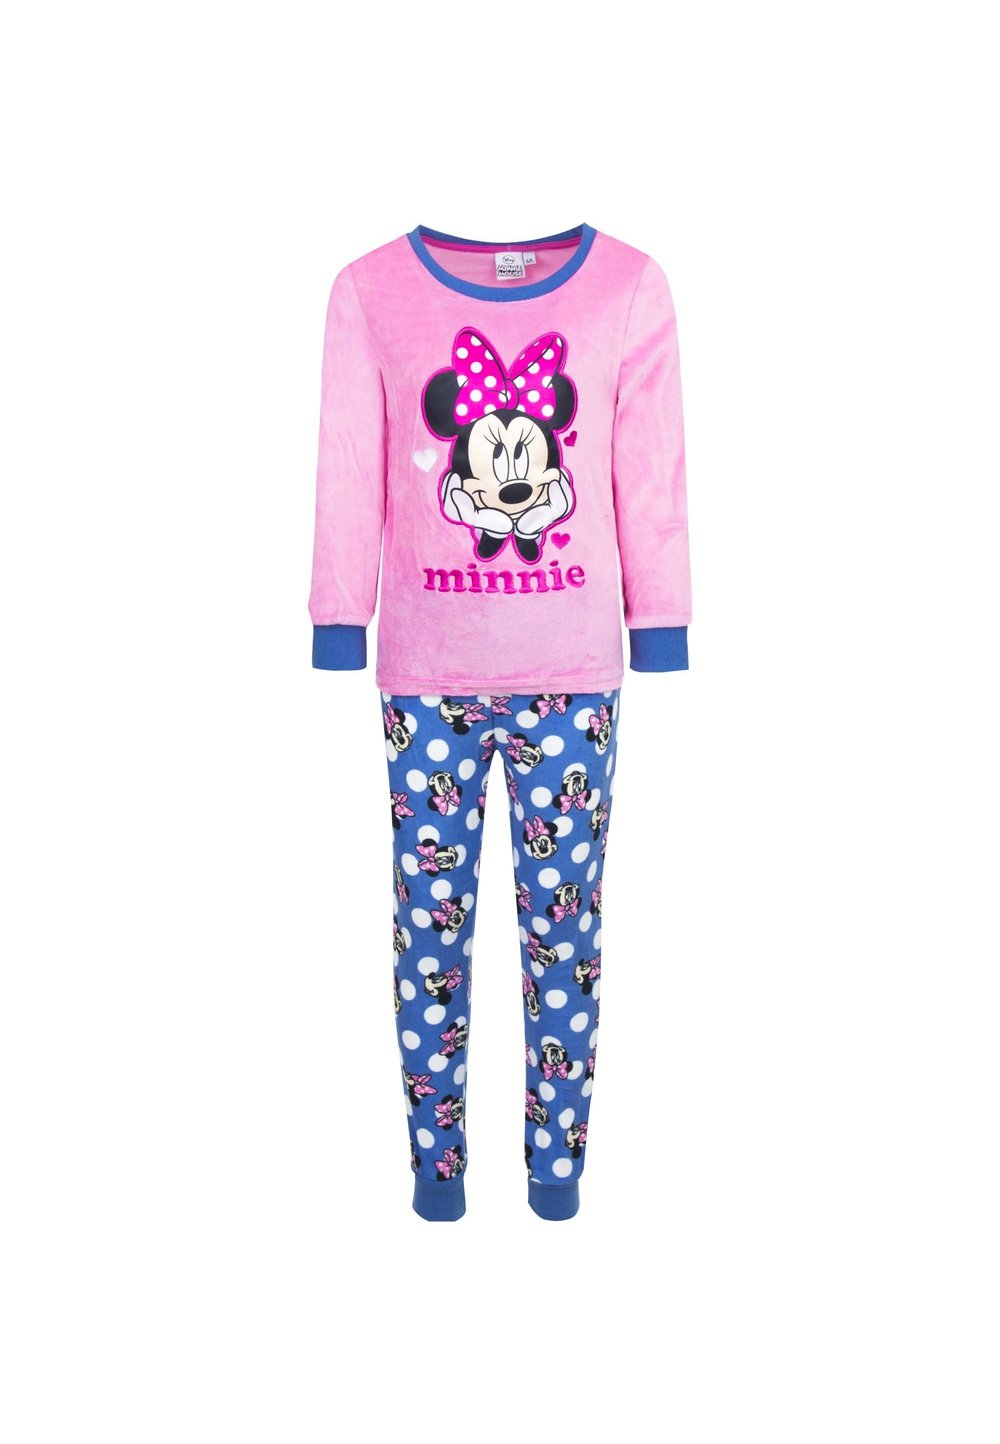 Pijama velur roz, Minnie cu fundita roz imagine